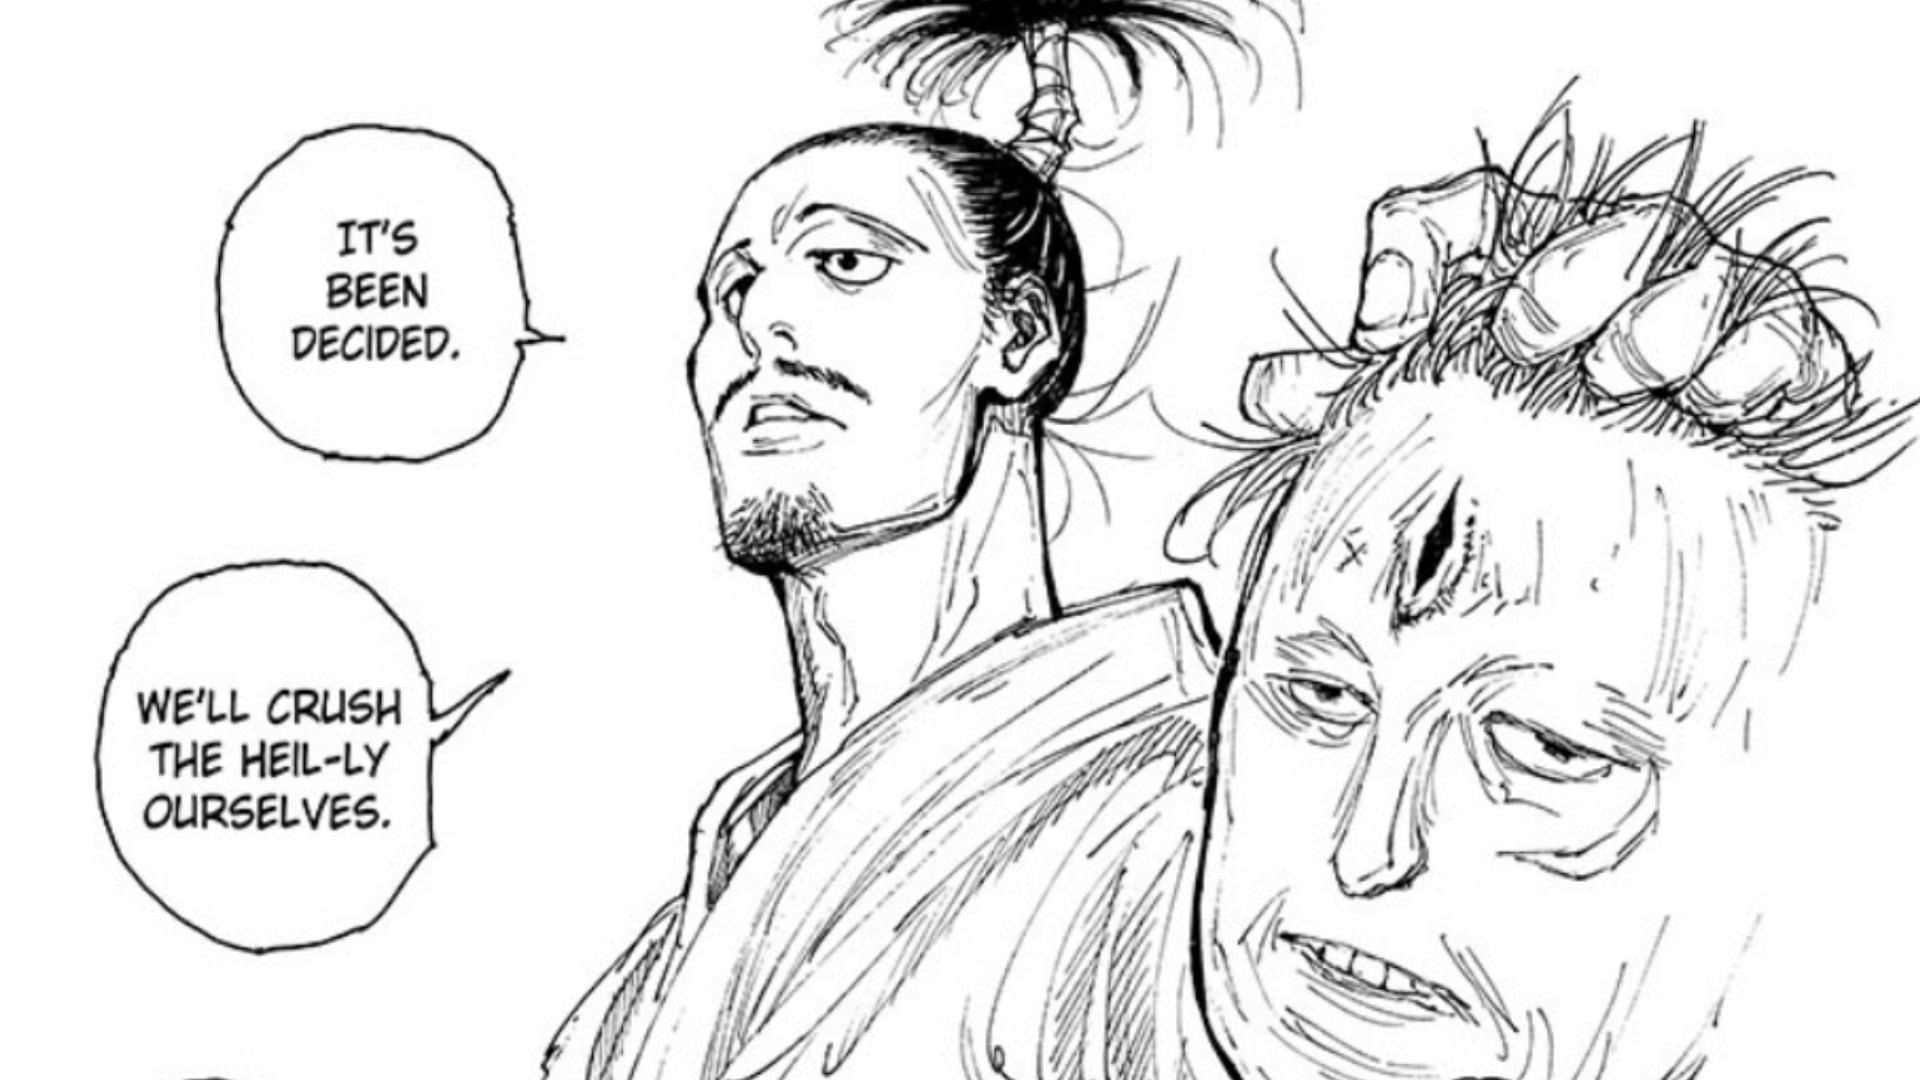 Nobunaga with Luini&#039;s head in Hunter x Hunter chapter 393 (Image via Shueisha)